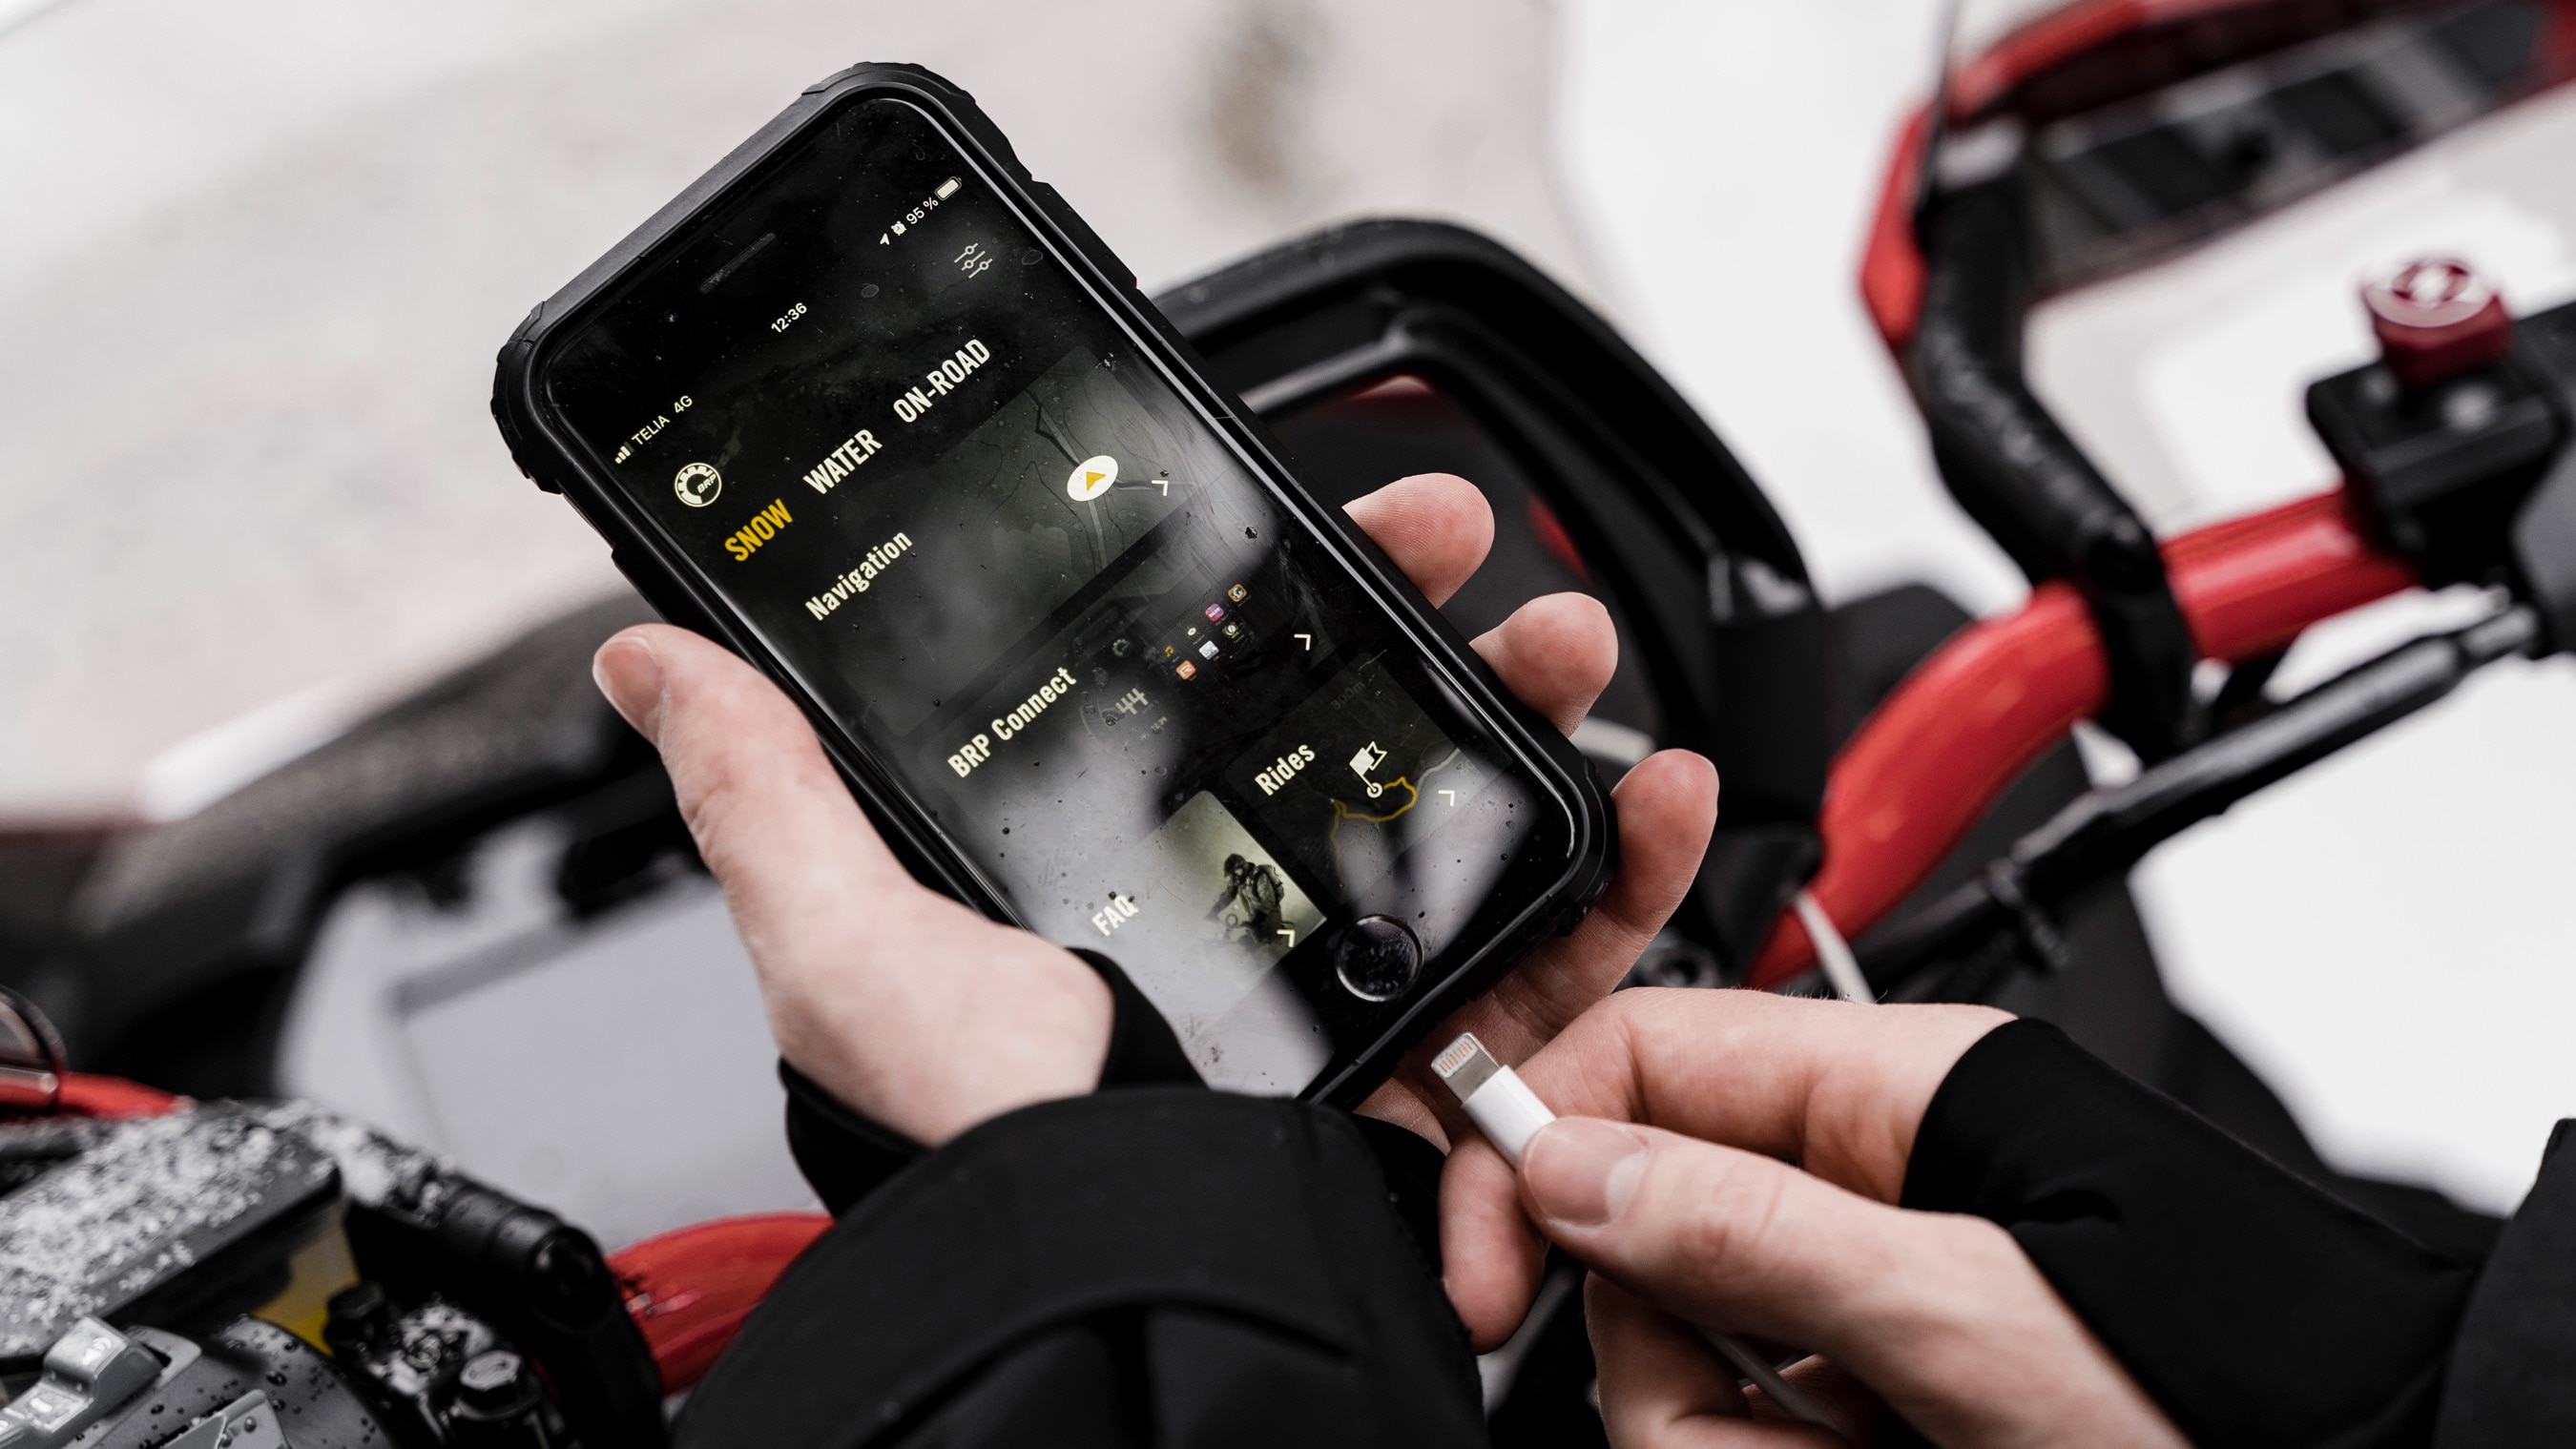 The BRP GO! on a phone near a Lynx snowmobile